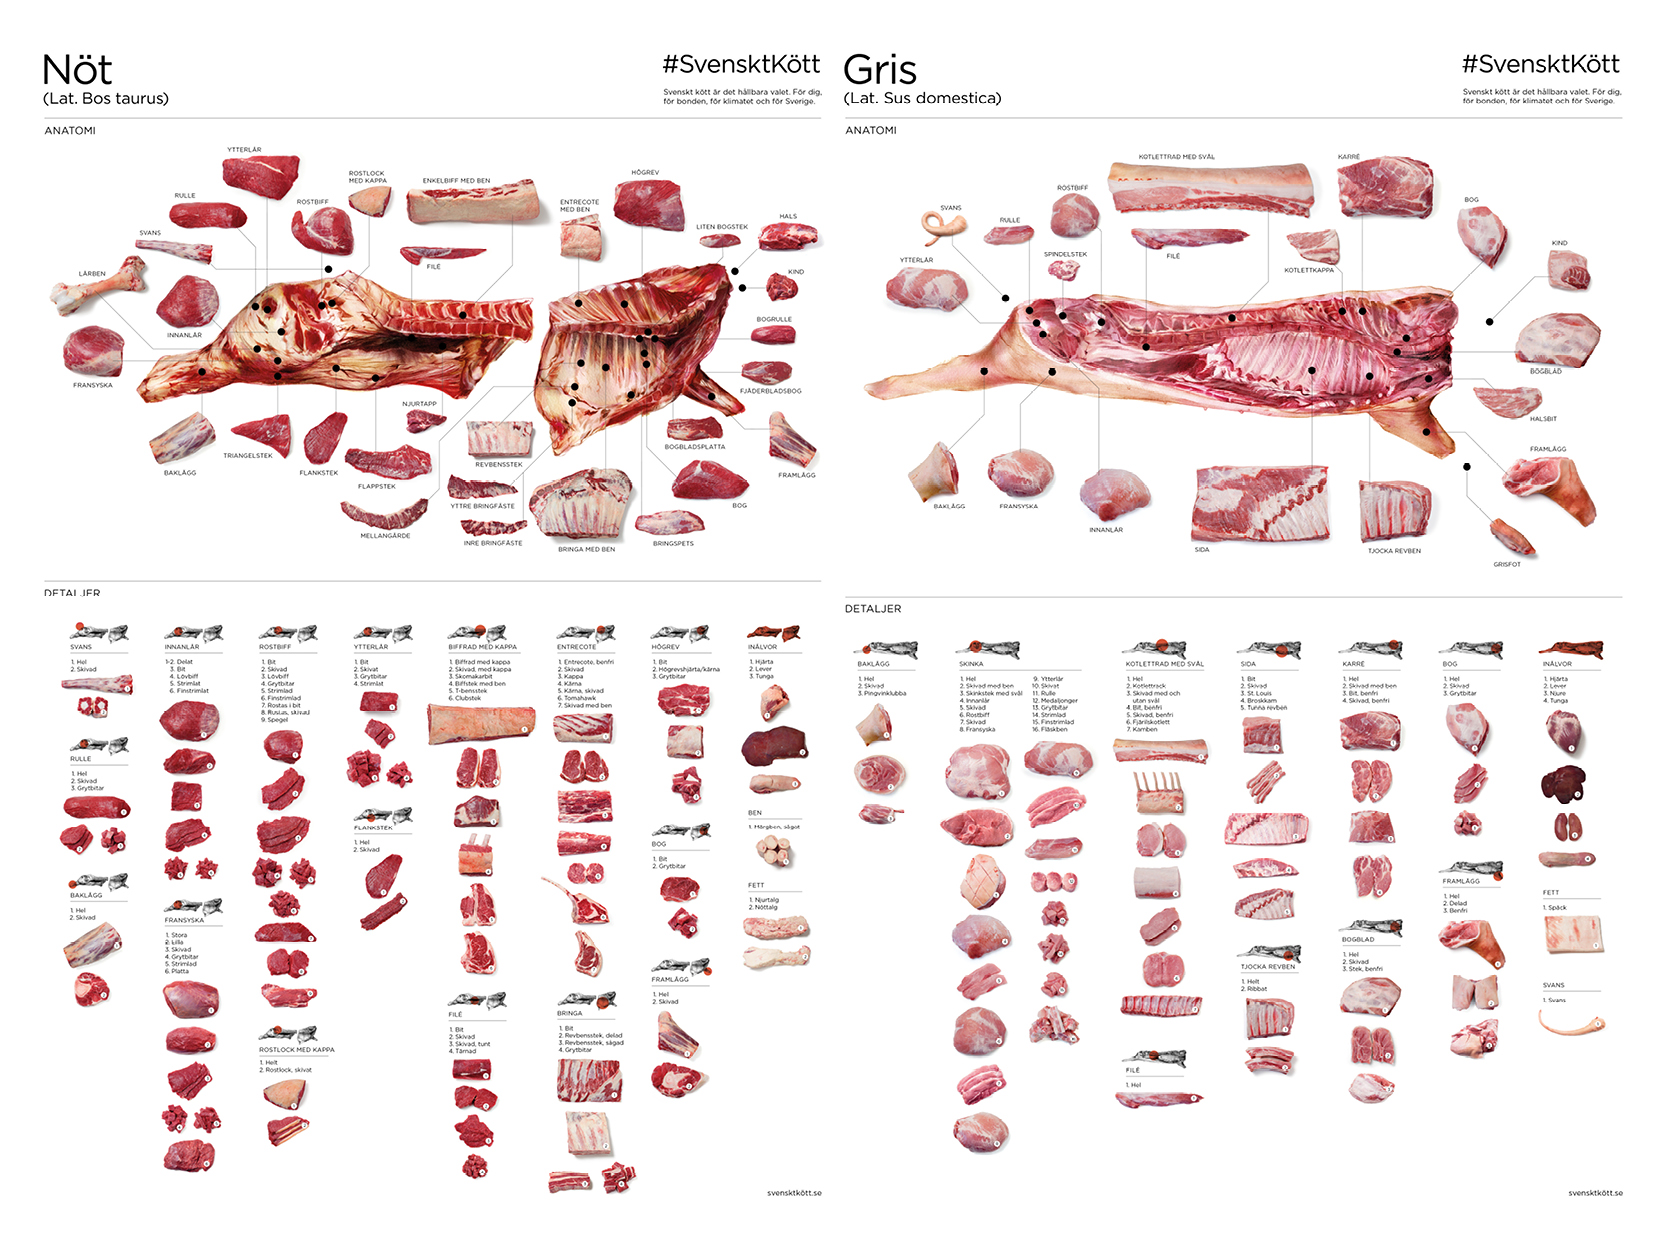 Nya styckningsdetaljer på nöt, lamm och gris – Restaurangvärlden